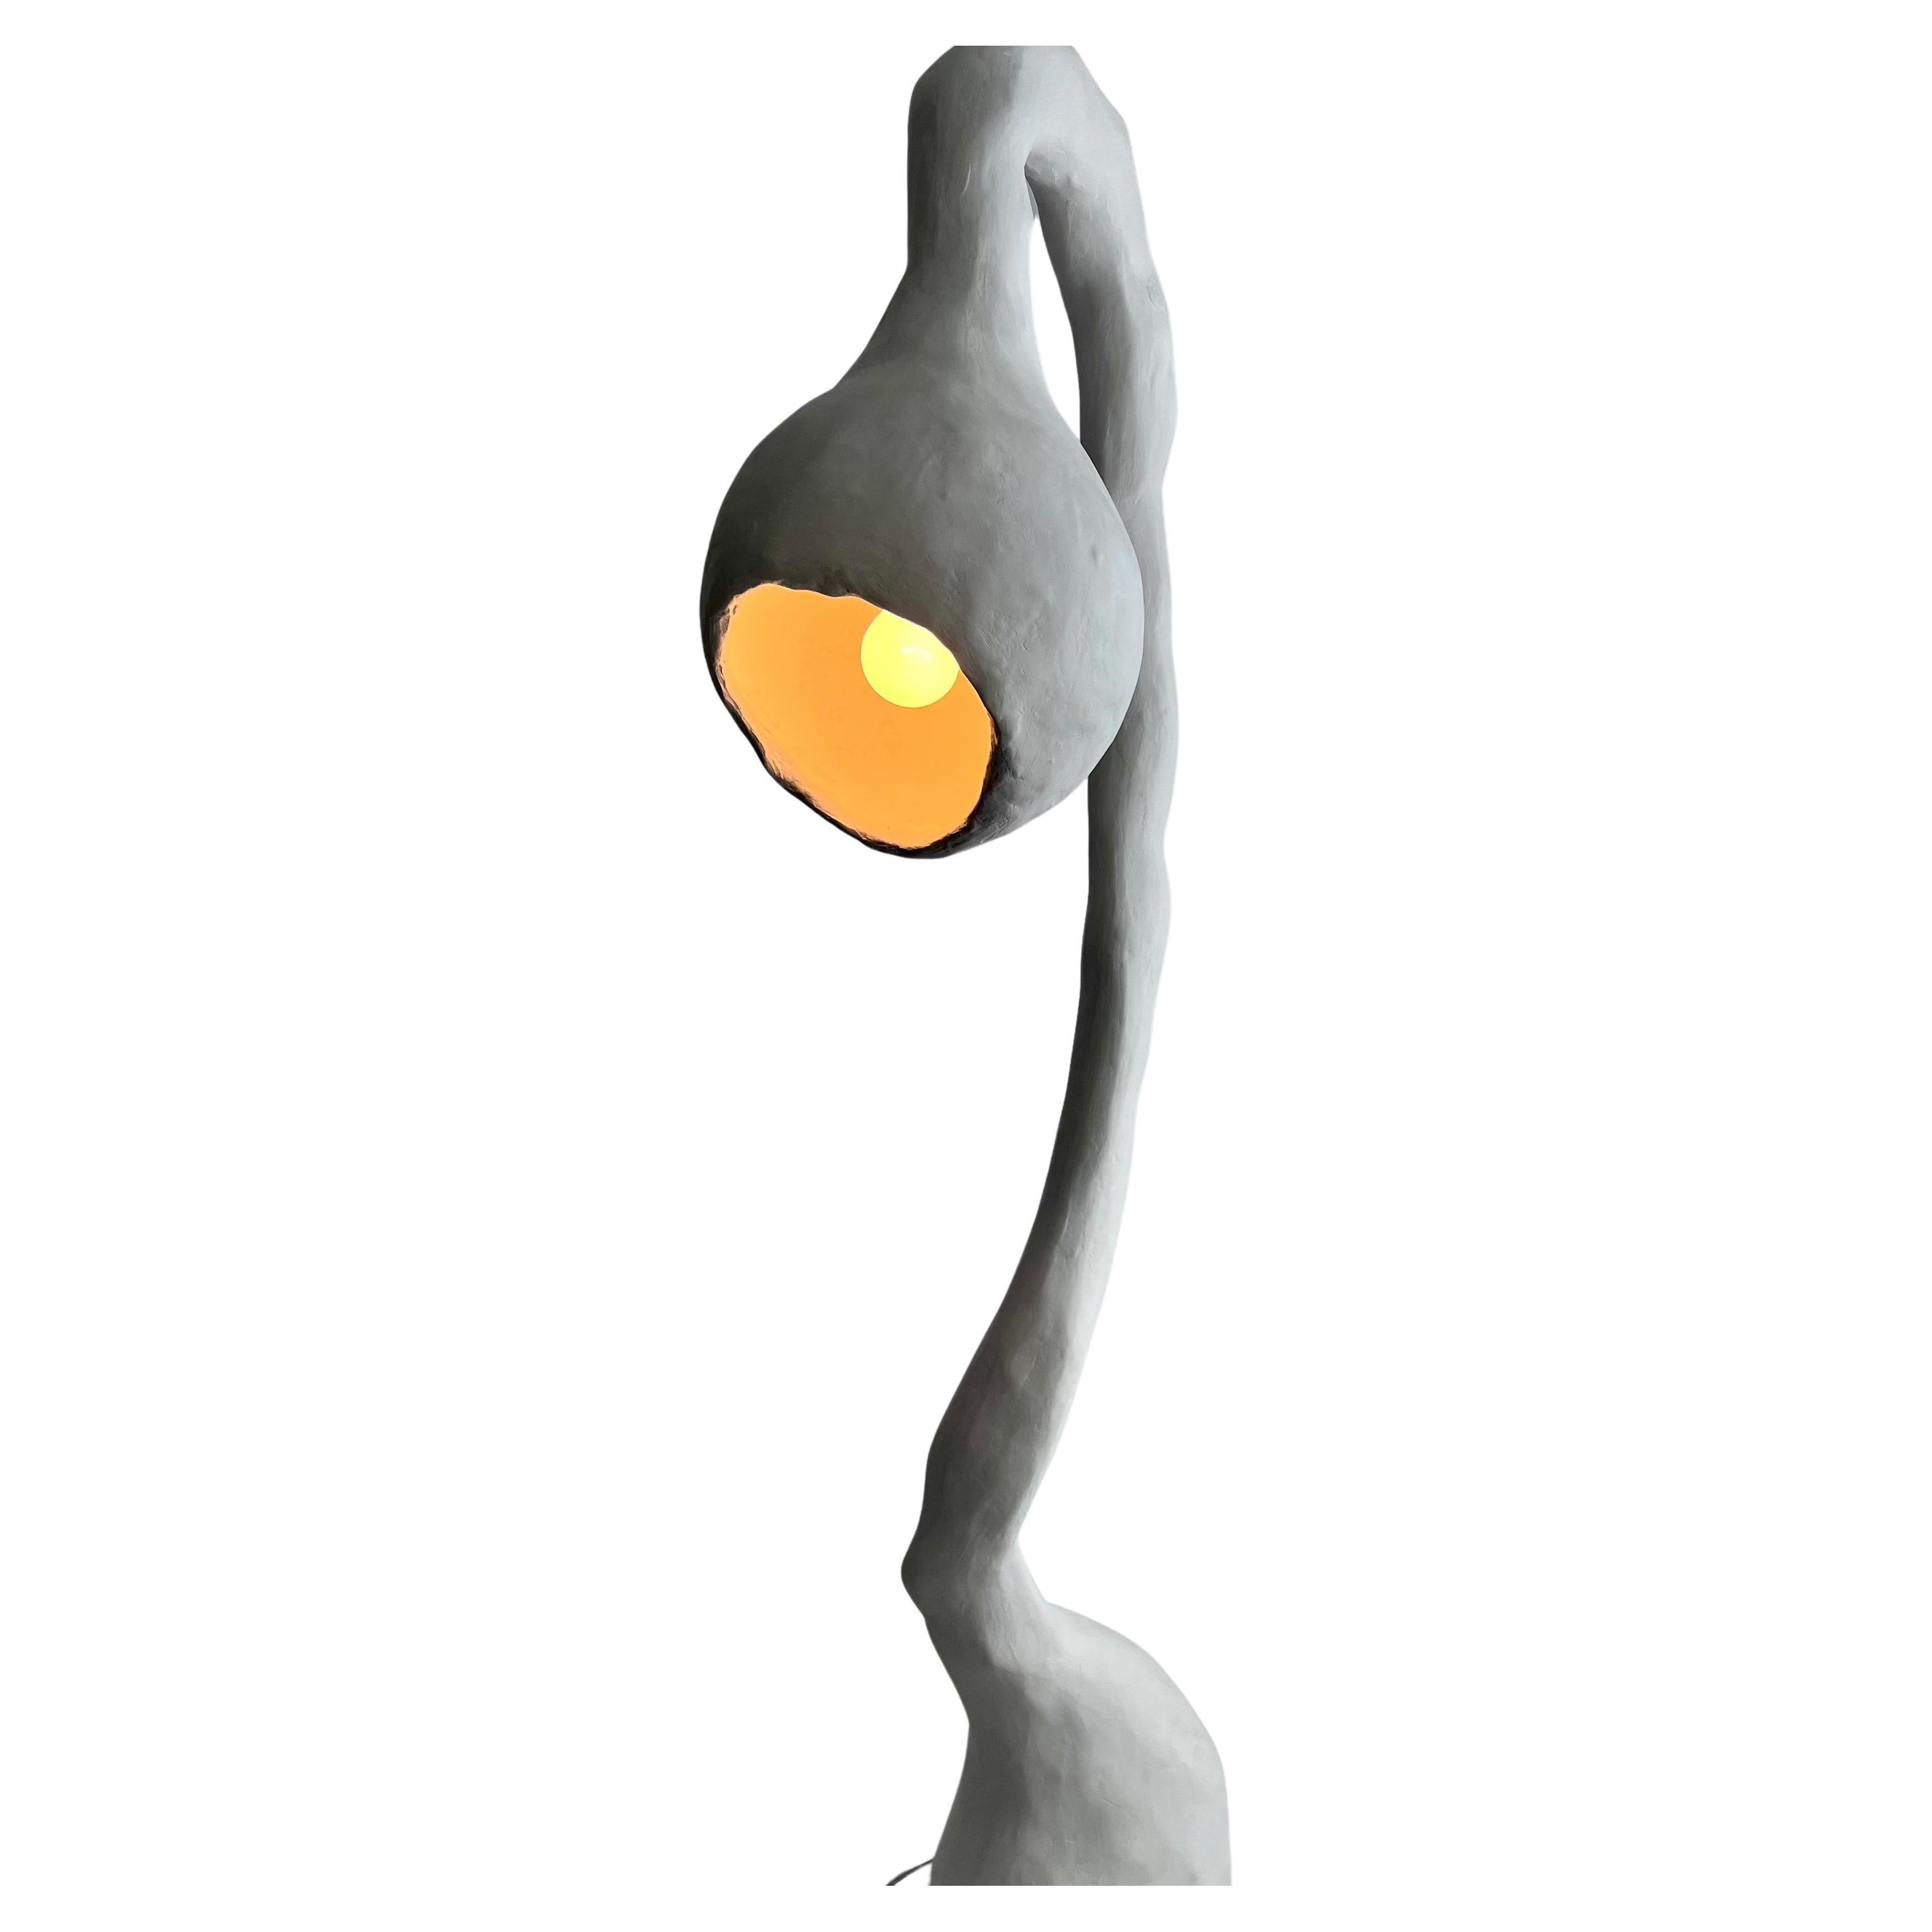 Lampe biomorphique de Studio Chora, sur pied, pierre calcaire blanche, fabriquée sur commande